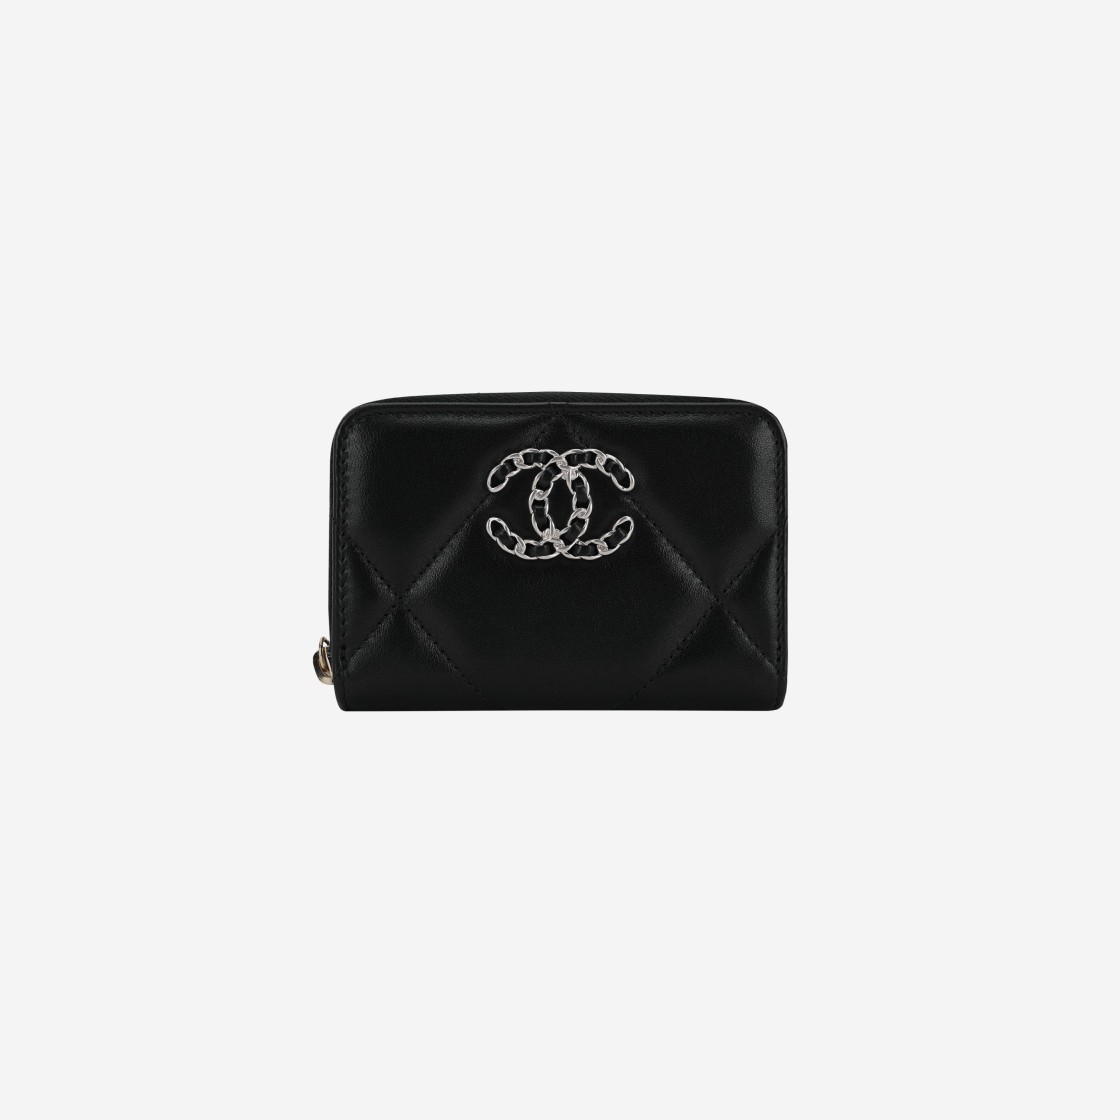 샤넬 19 지퍼 코인 지갑 램스킨 & 실버 메탈 블랙, Chanel